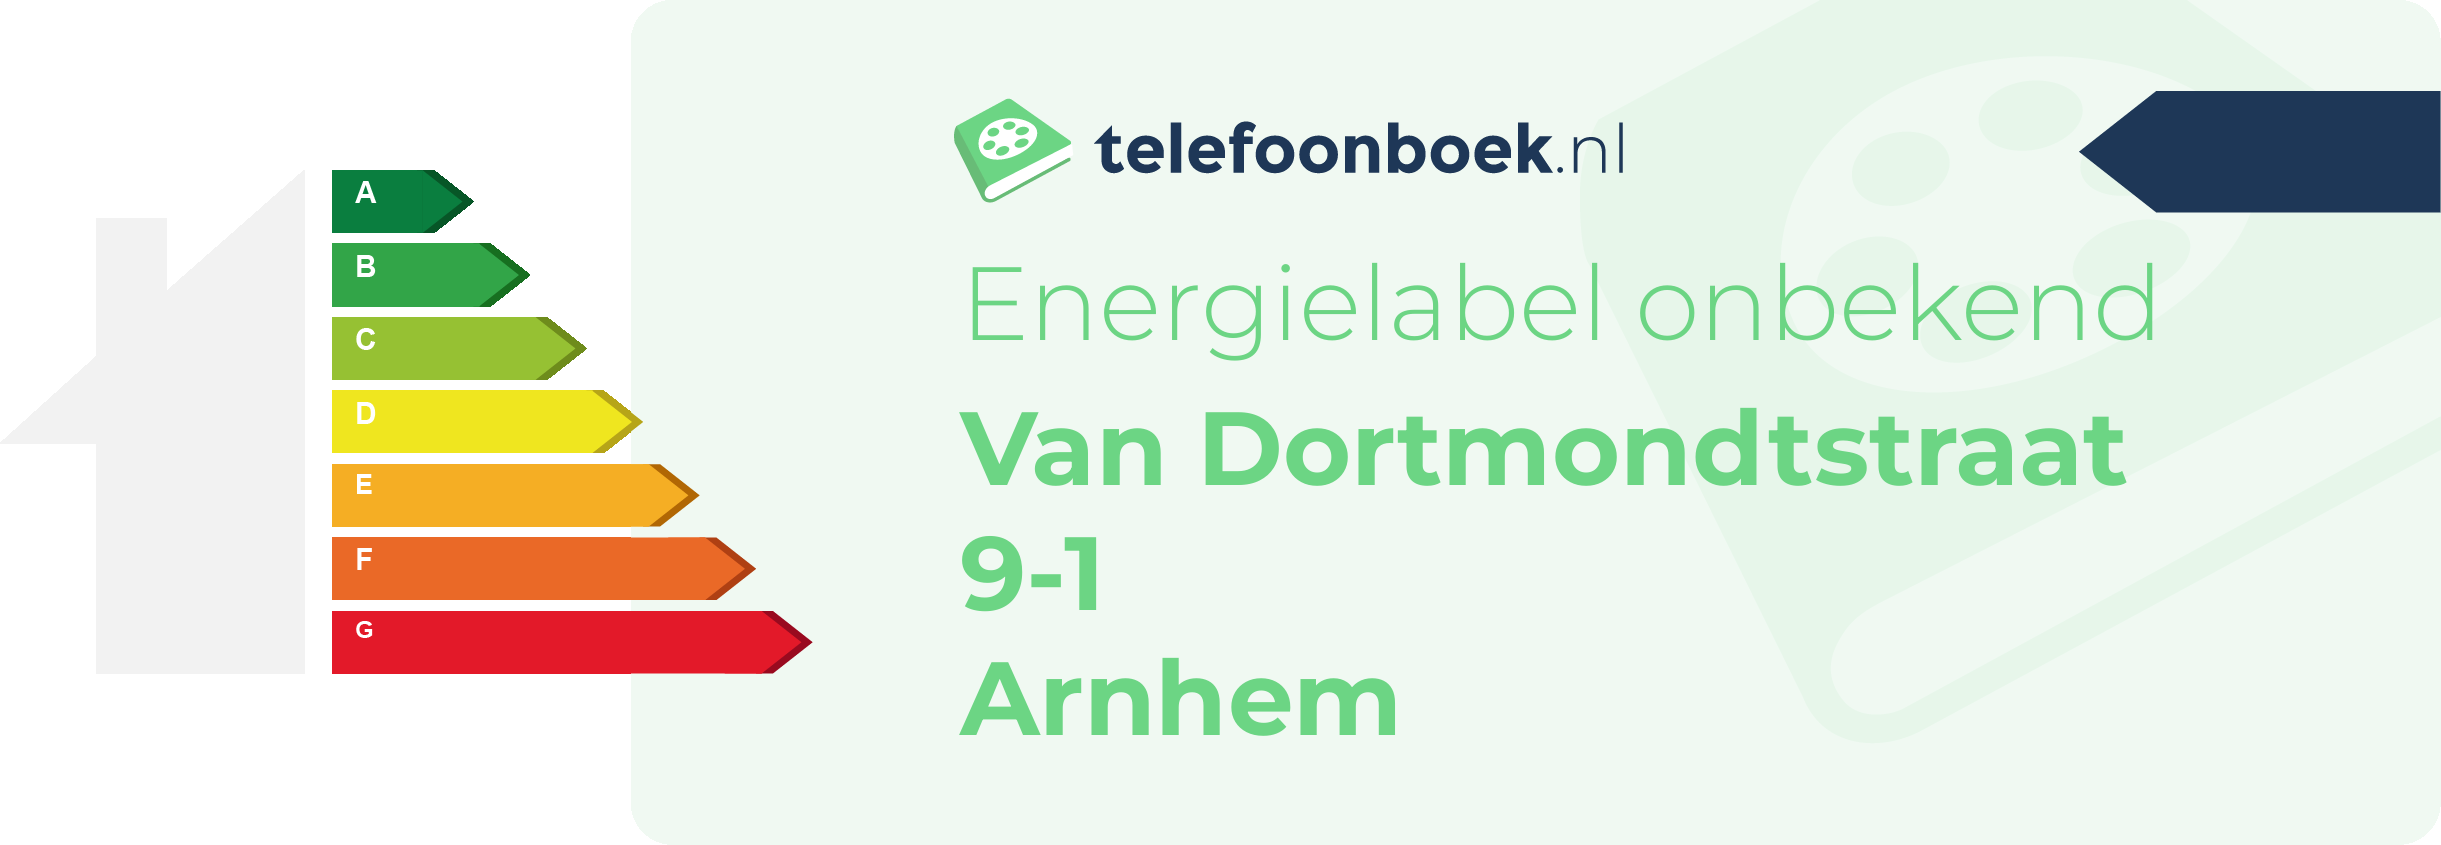 Energielabel Van Dortmondtstraat 9-1 Arnhem